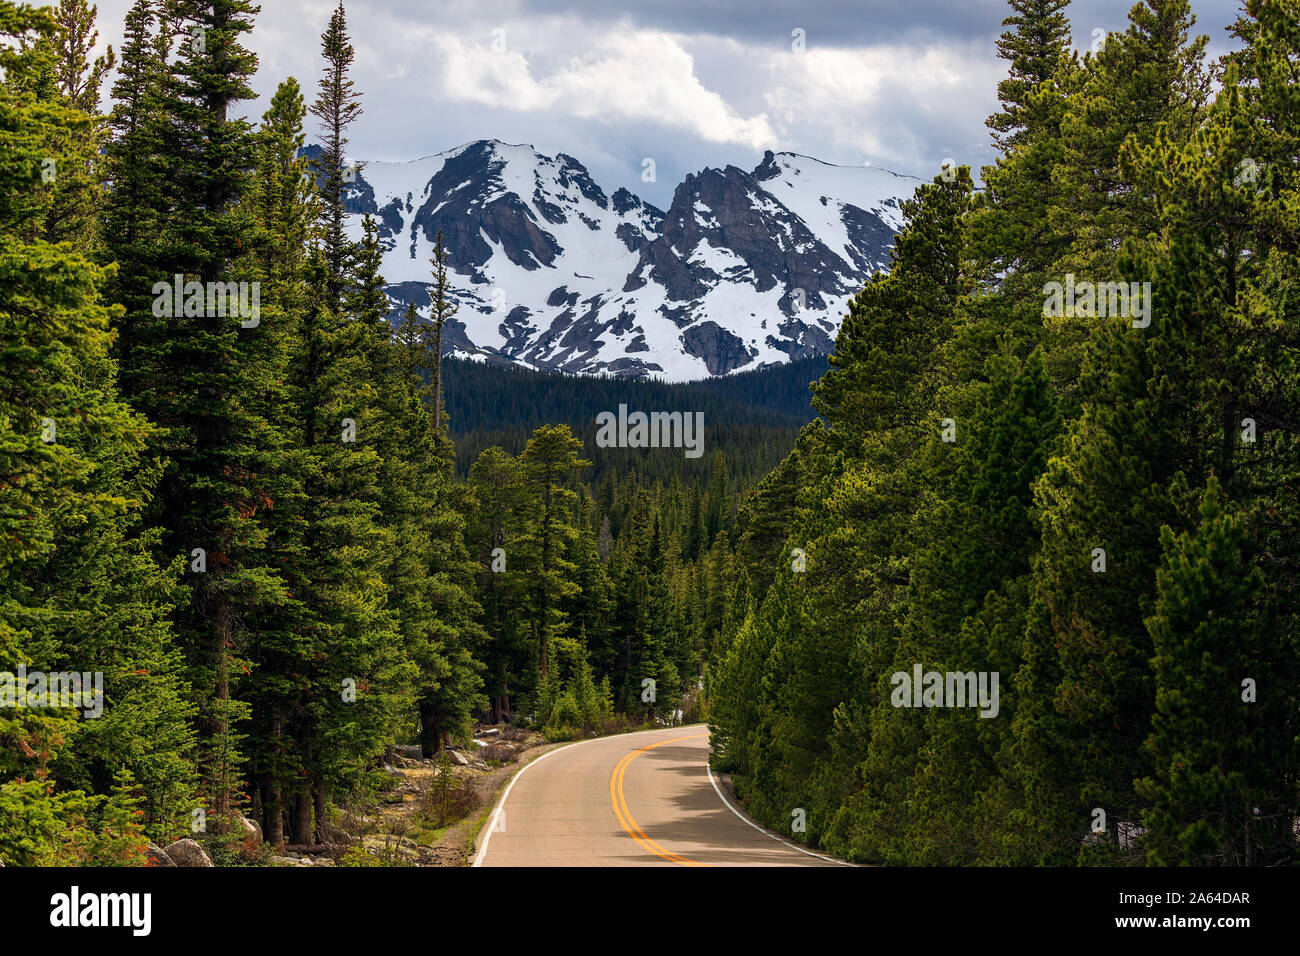 Une route sinueuse mène à travers la forêt jusqu'à Indian Peaks Wilderness dans les montagnes Rocheuses près de Ward, Colorado, États-Unis Banque D'Images